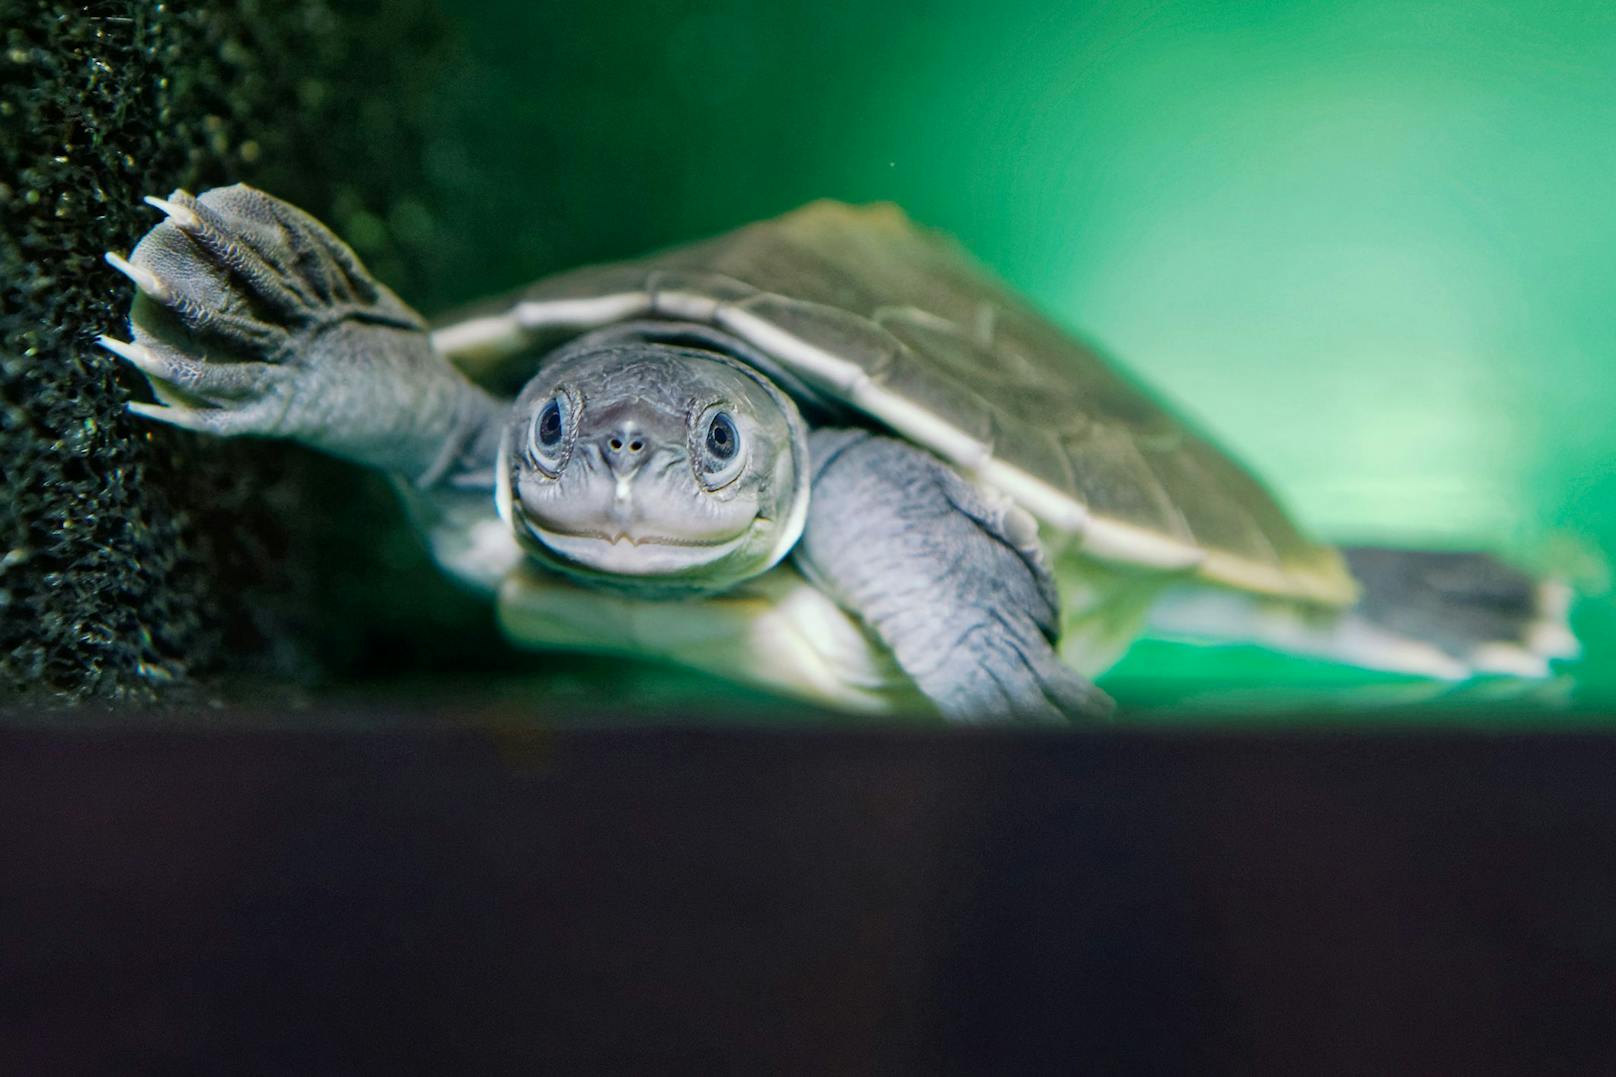 Batagur-Schildkröte werden ca. 60 Zentimeter lang und leben im Süsswasser. Sie galt bereits als ausgerottet. 